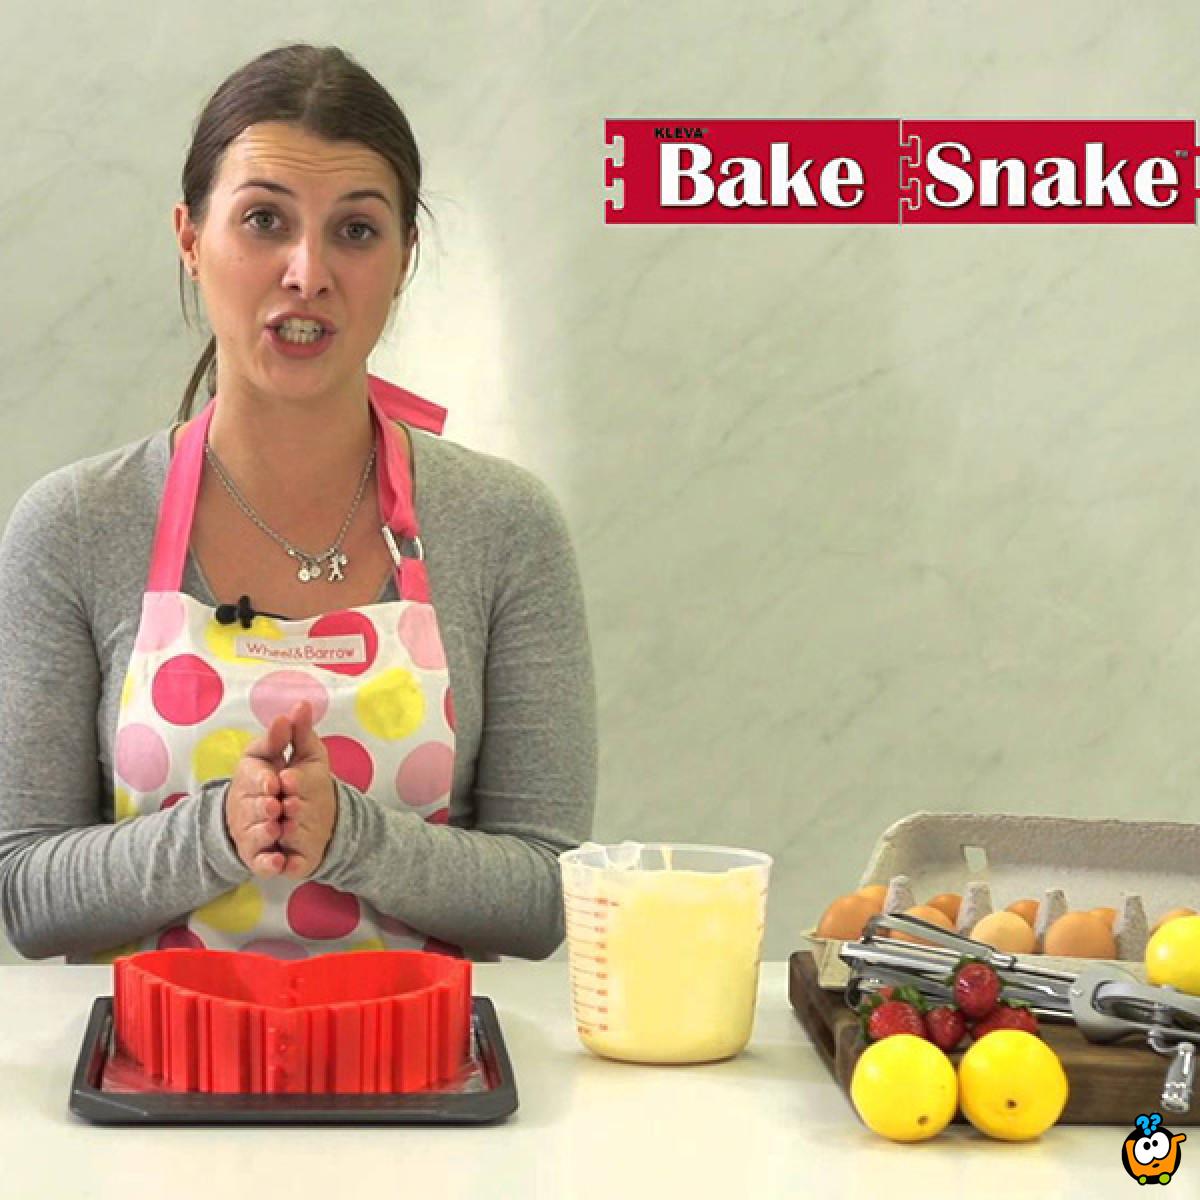 BAKE SNAKE - Magična modla-slagalica za pečenje u raznim oblicima